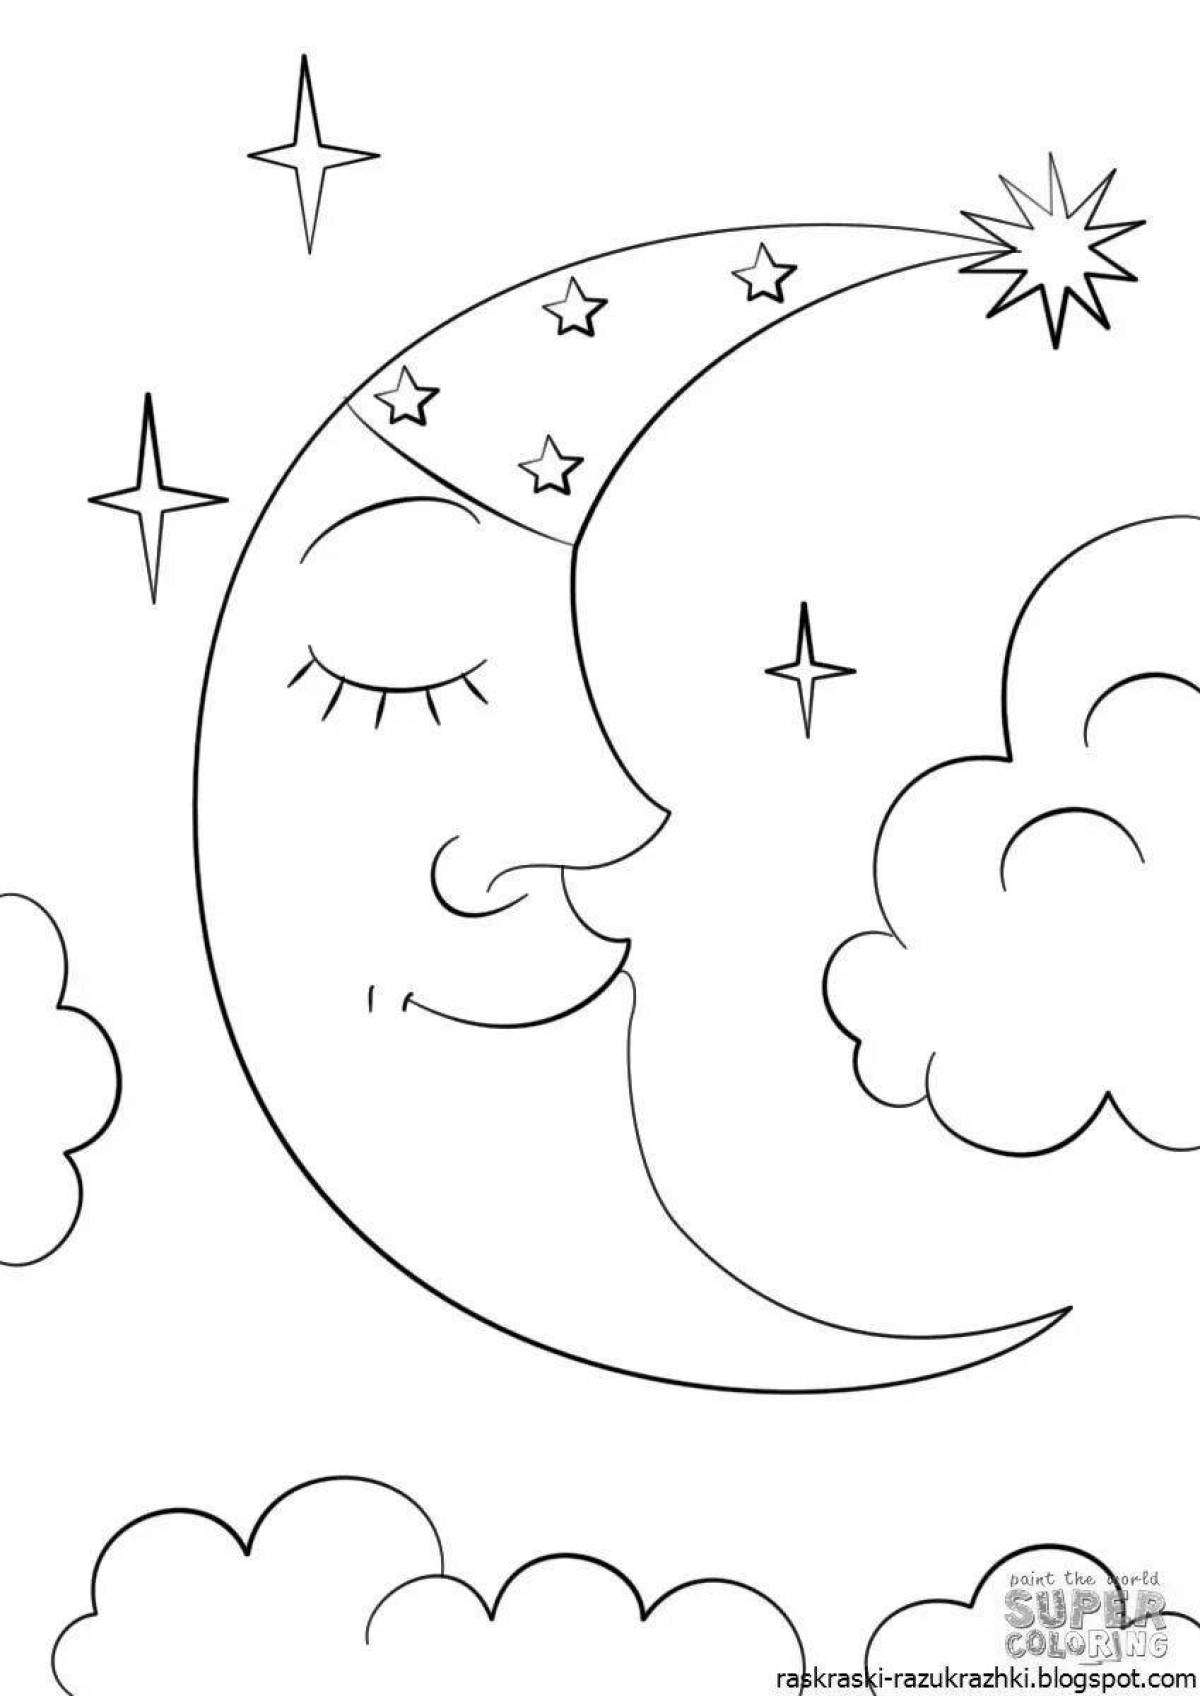 Радостная раскраска луна для детей